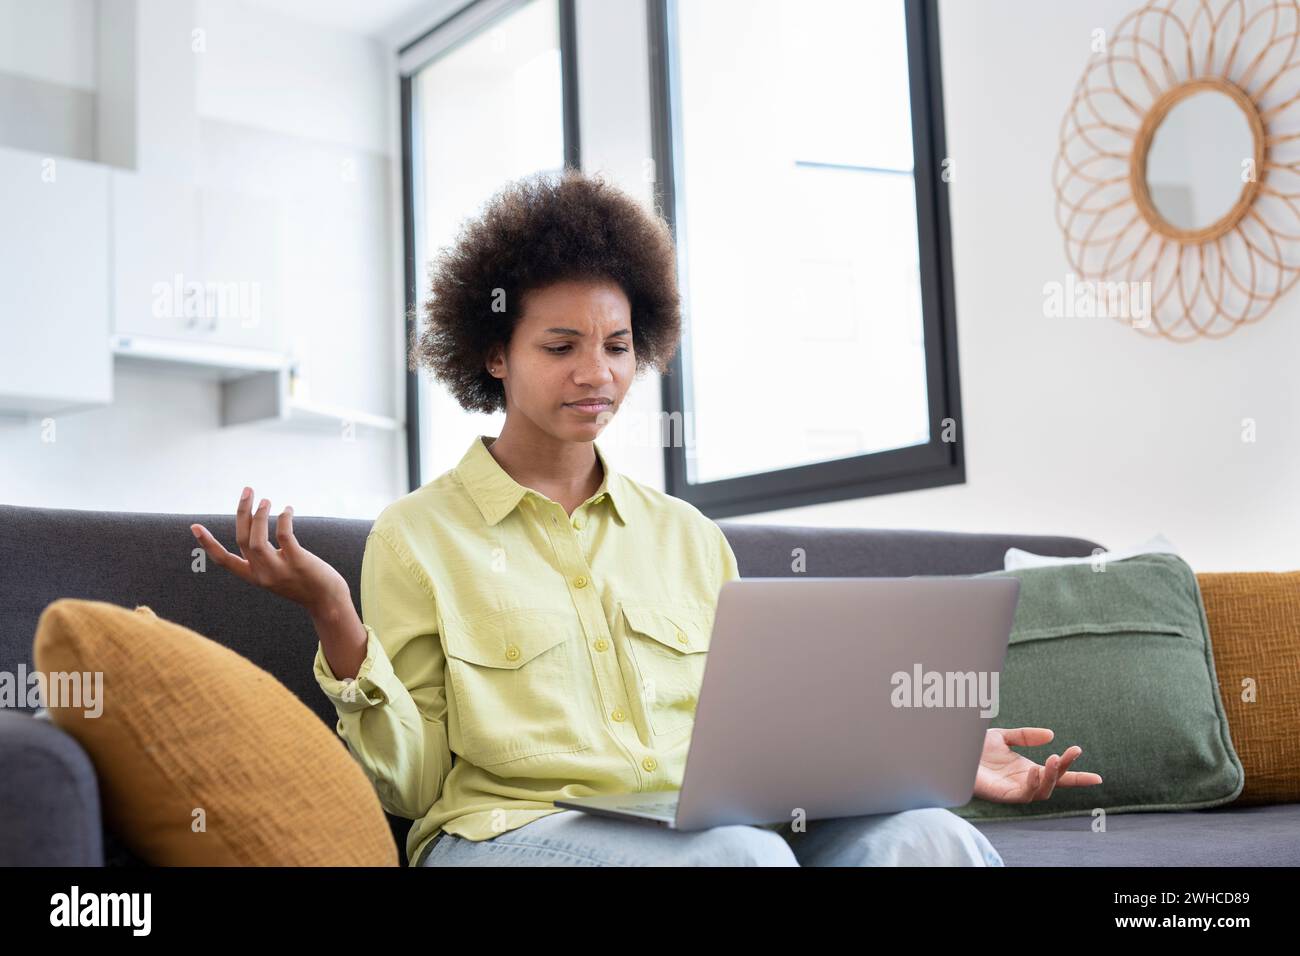 Frustrierte junge schwarze Hausbesitzerin, die E-Mails mit schlechten Nachrichten bekommt, am Laptop sitzt, am Rechner sitzt, Rechnungen zu Hause ausgibt, den Kopf berührt. Mädchen enttäuscht von überhöhten Ausgaben, hohe Gebühren Stockfoto